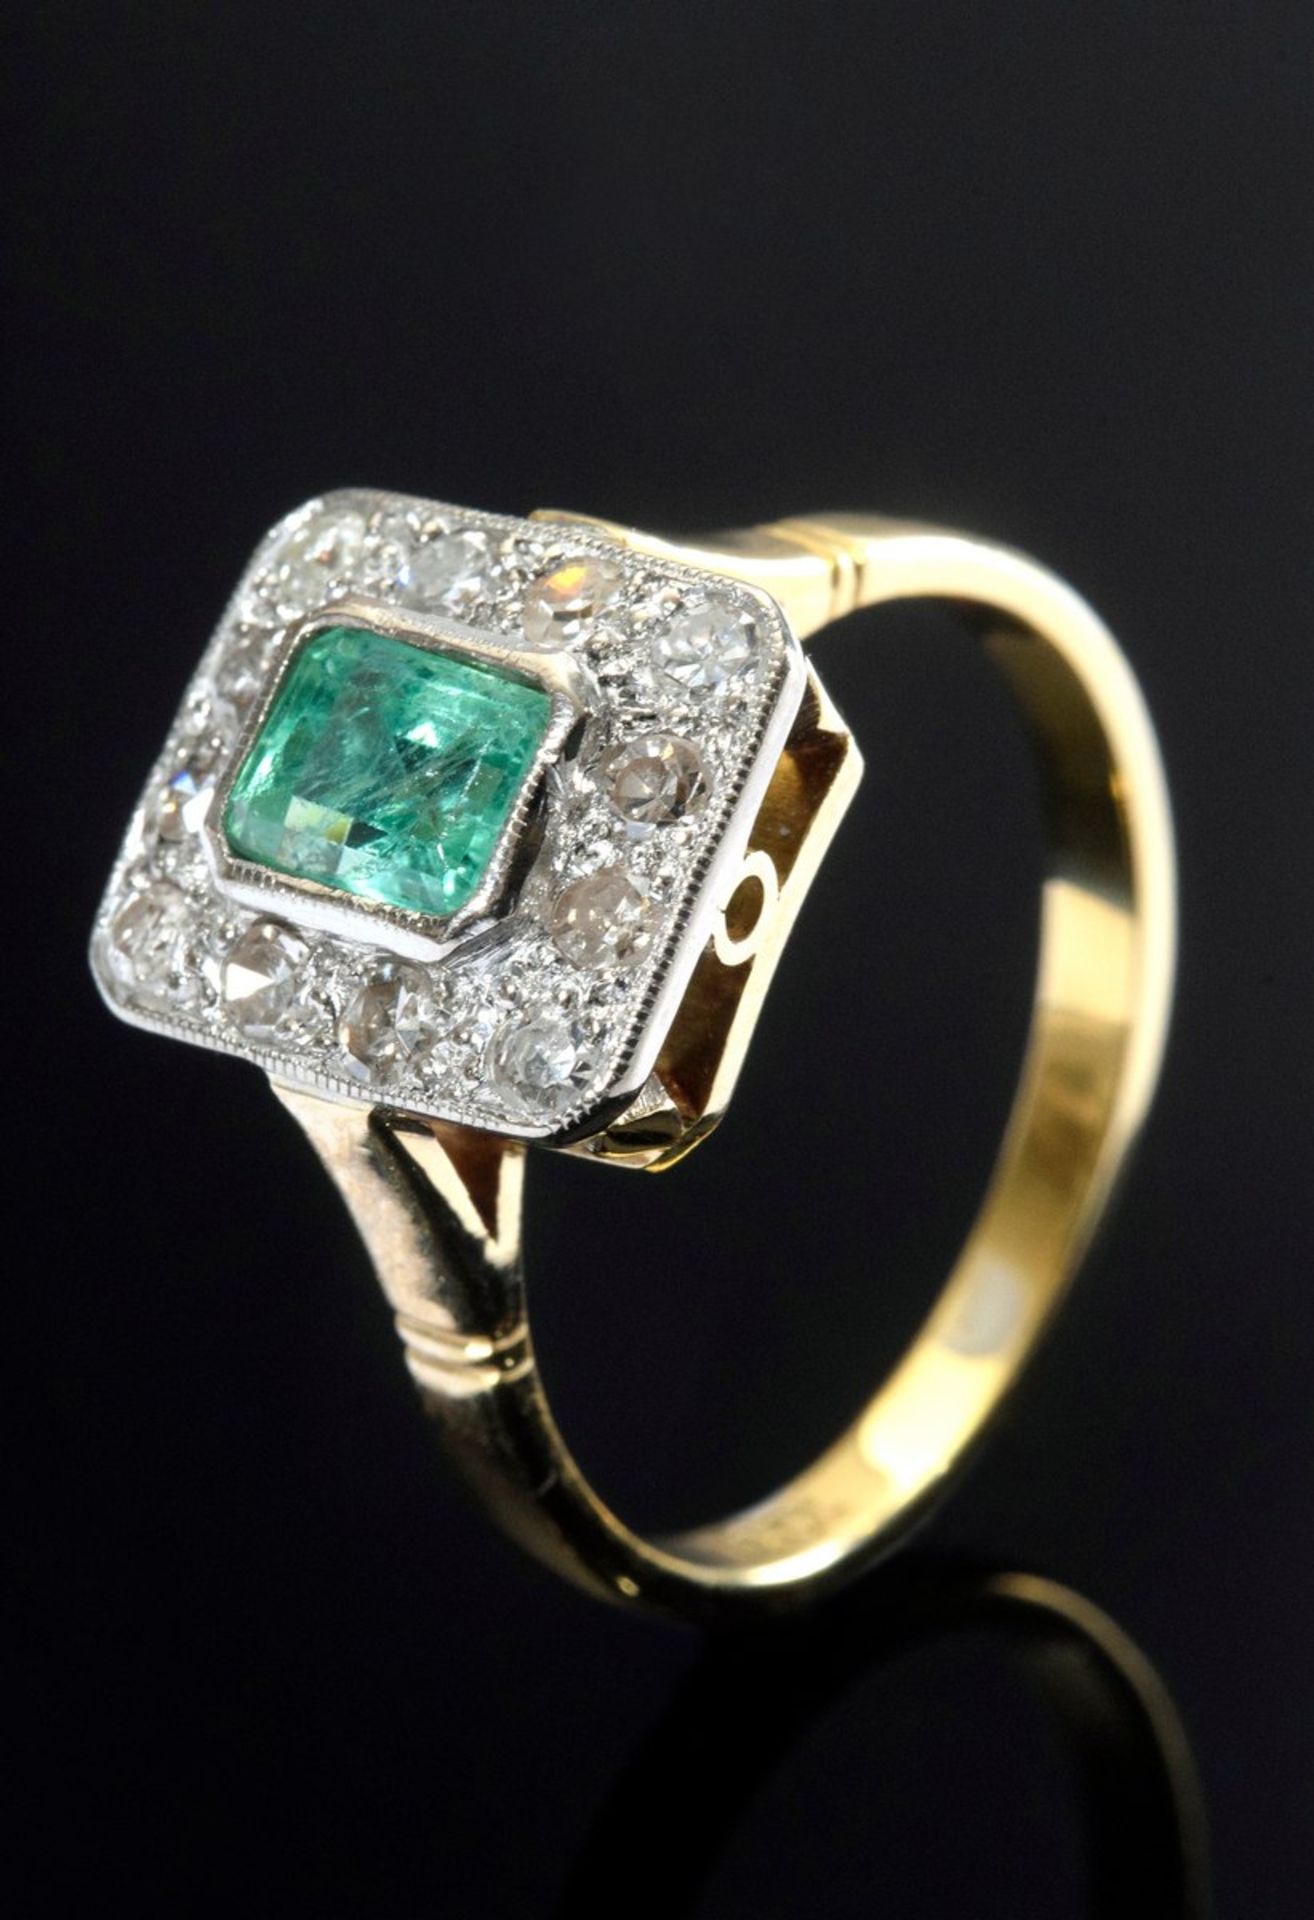 Klassischer GG/WG 750 Ring im Art Deco Stil mit Smaragd (ca. 0.50ct) sowie 12 Altschliffdiamanten (